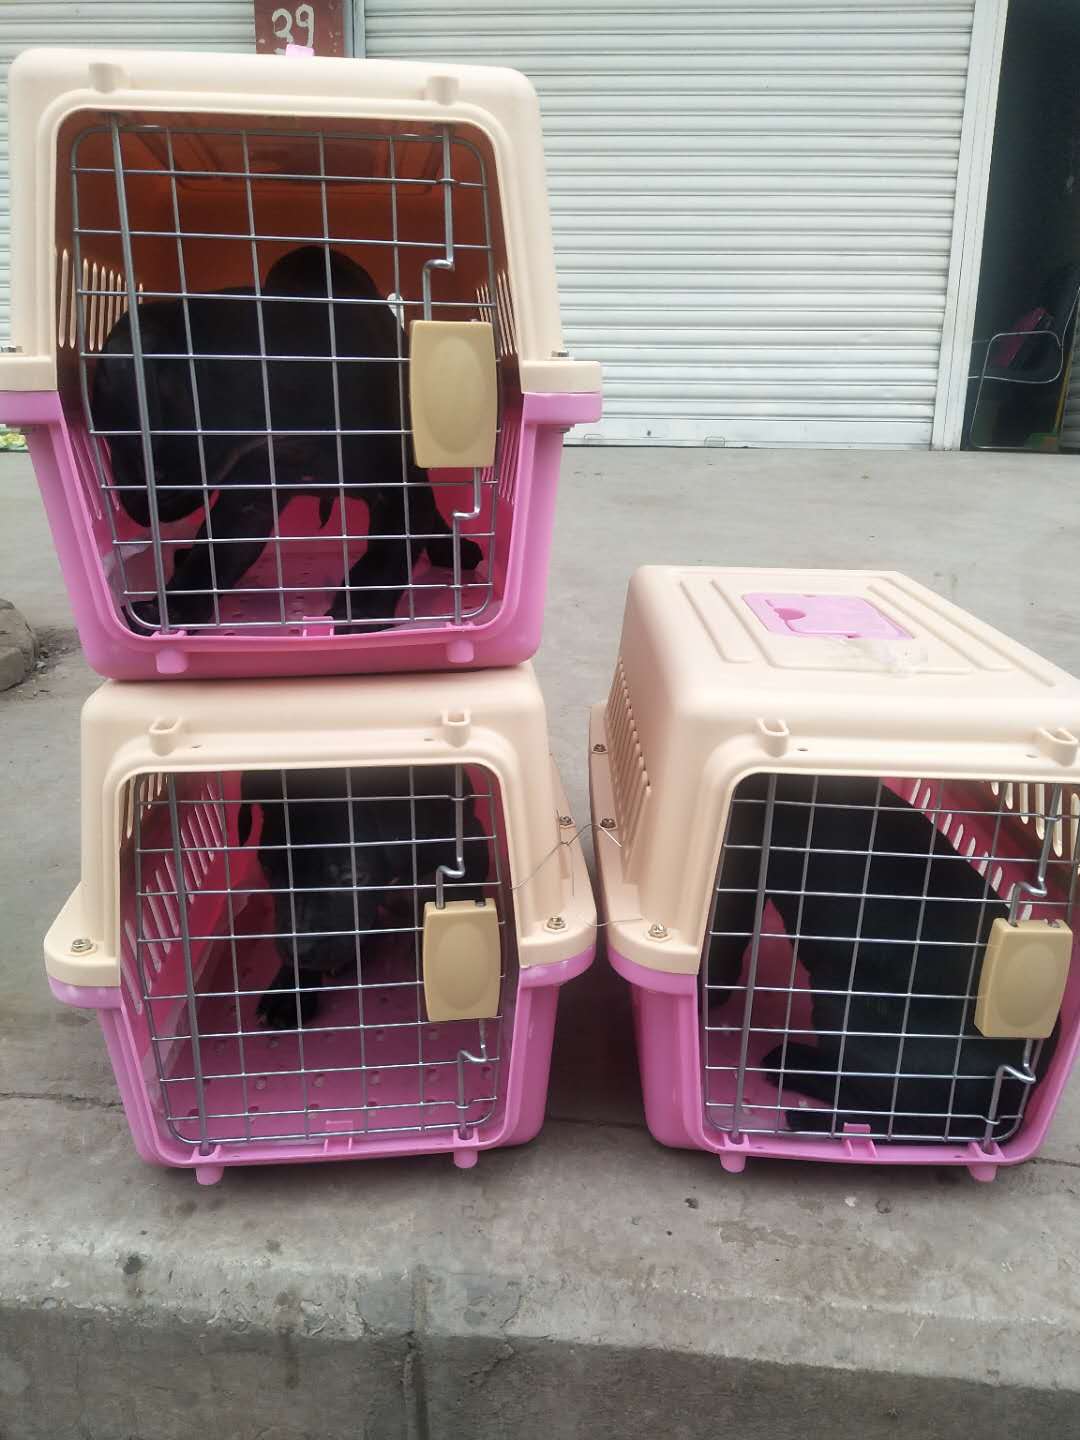 达州宠物托运 四川宠物托运 达州至全国各地宠物托运 达州到上海宠物托运 达州到上海宠物空运图片